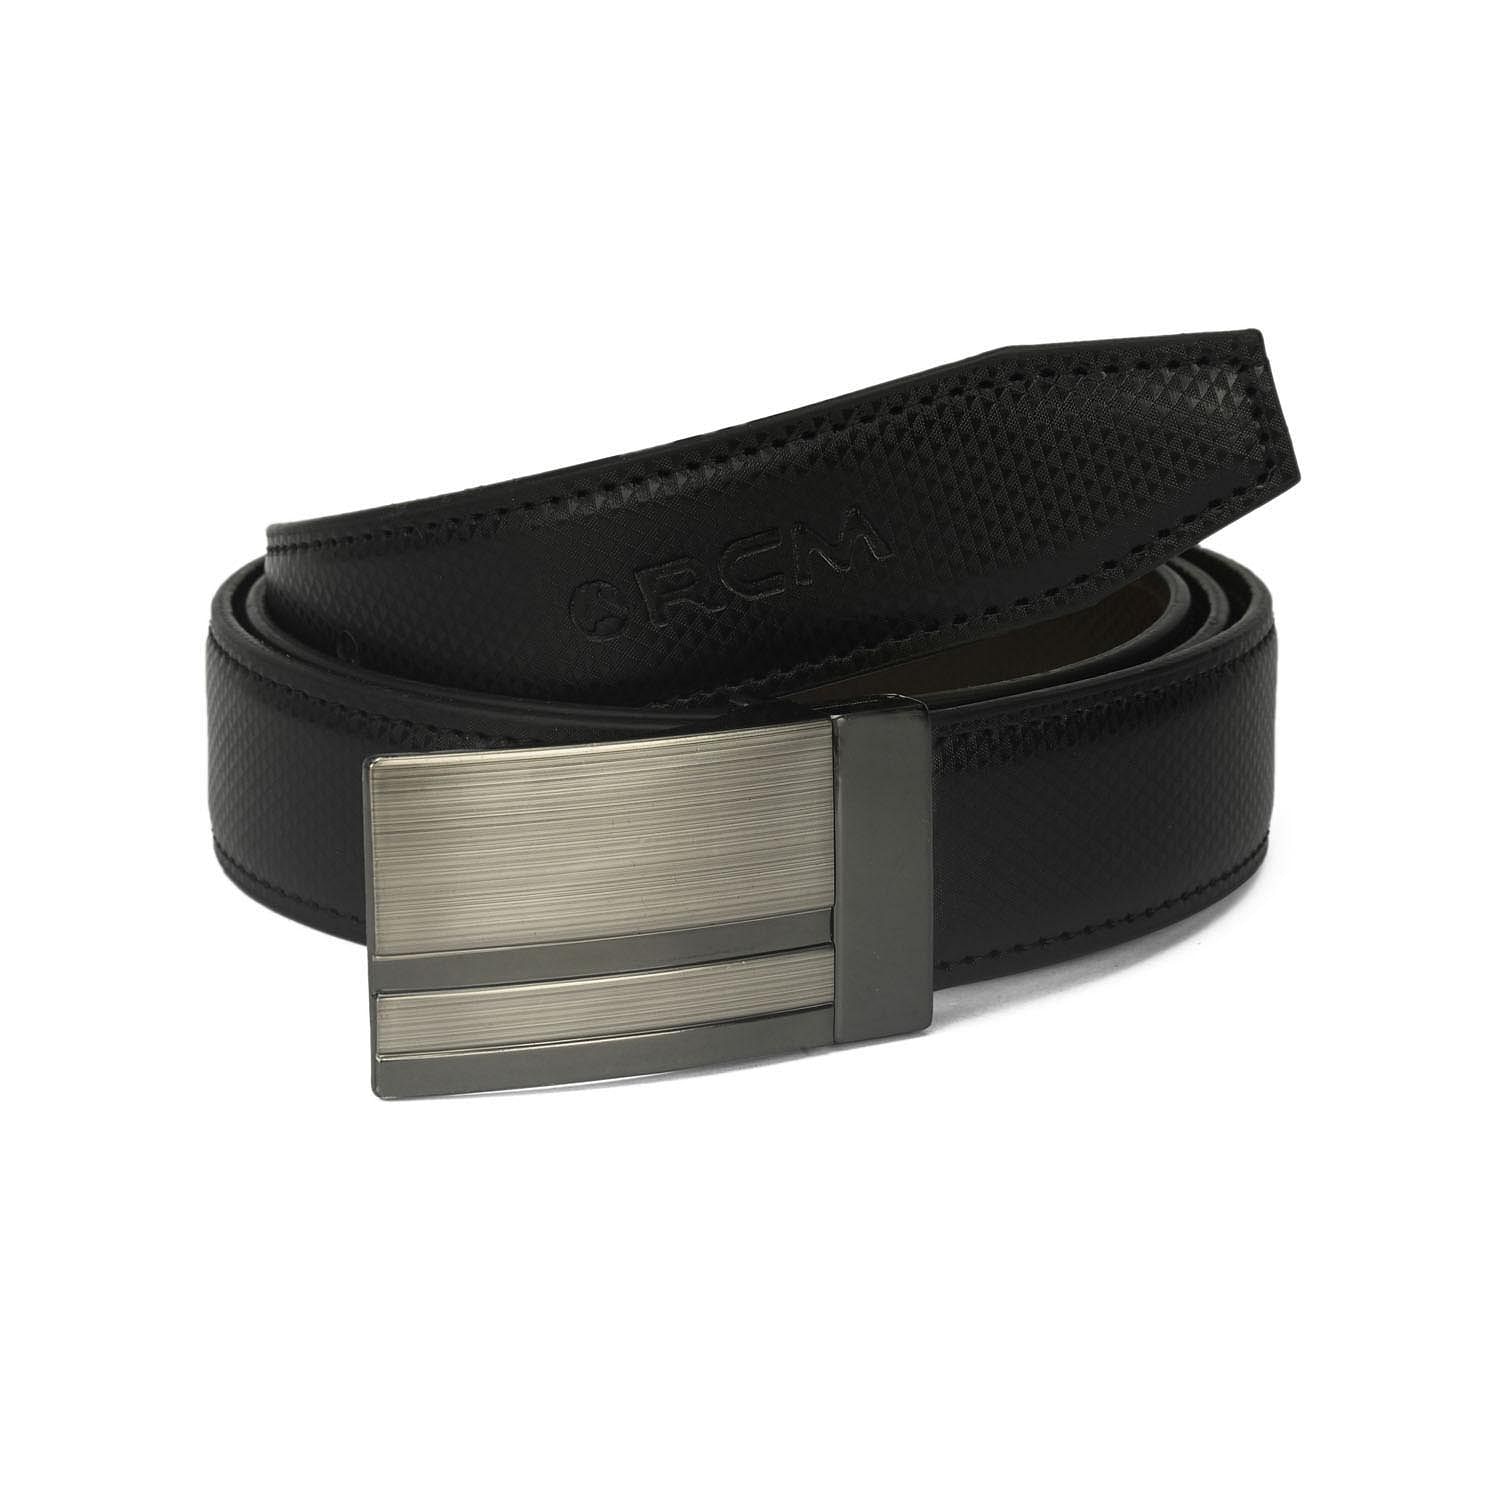 Men's Formal Belt with reversable Strap - FR-DB0009 - Black/Brown